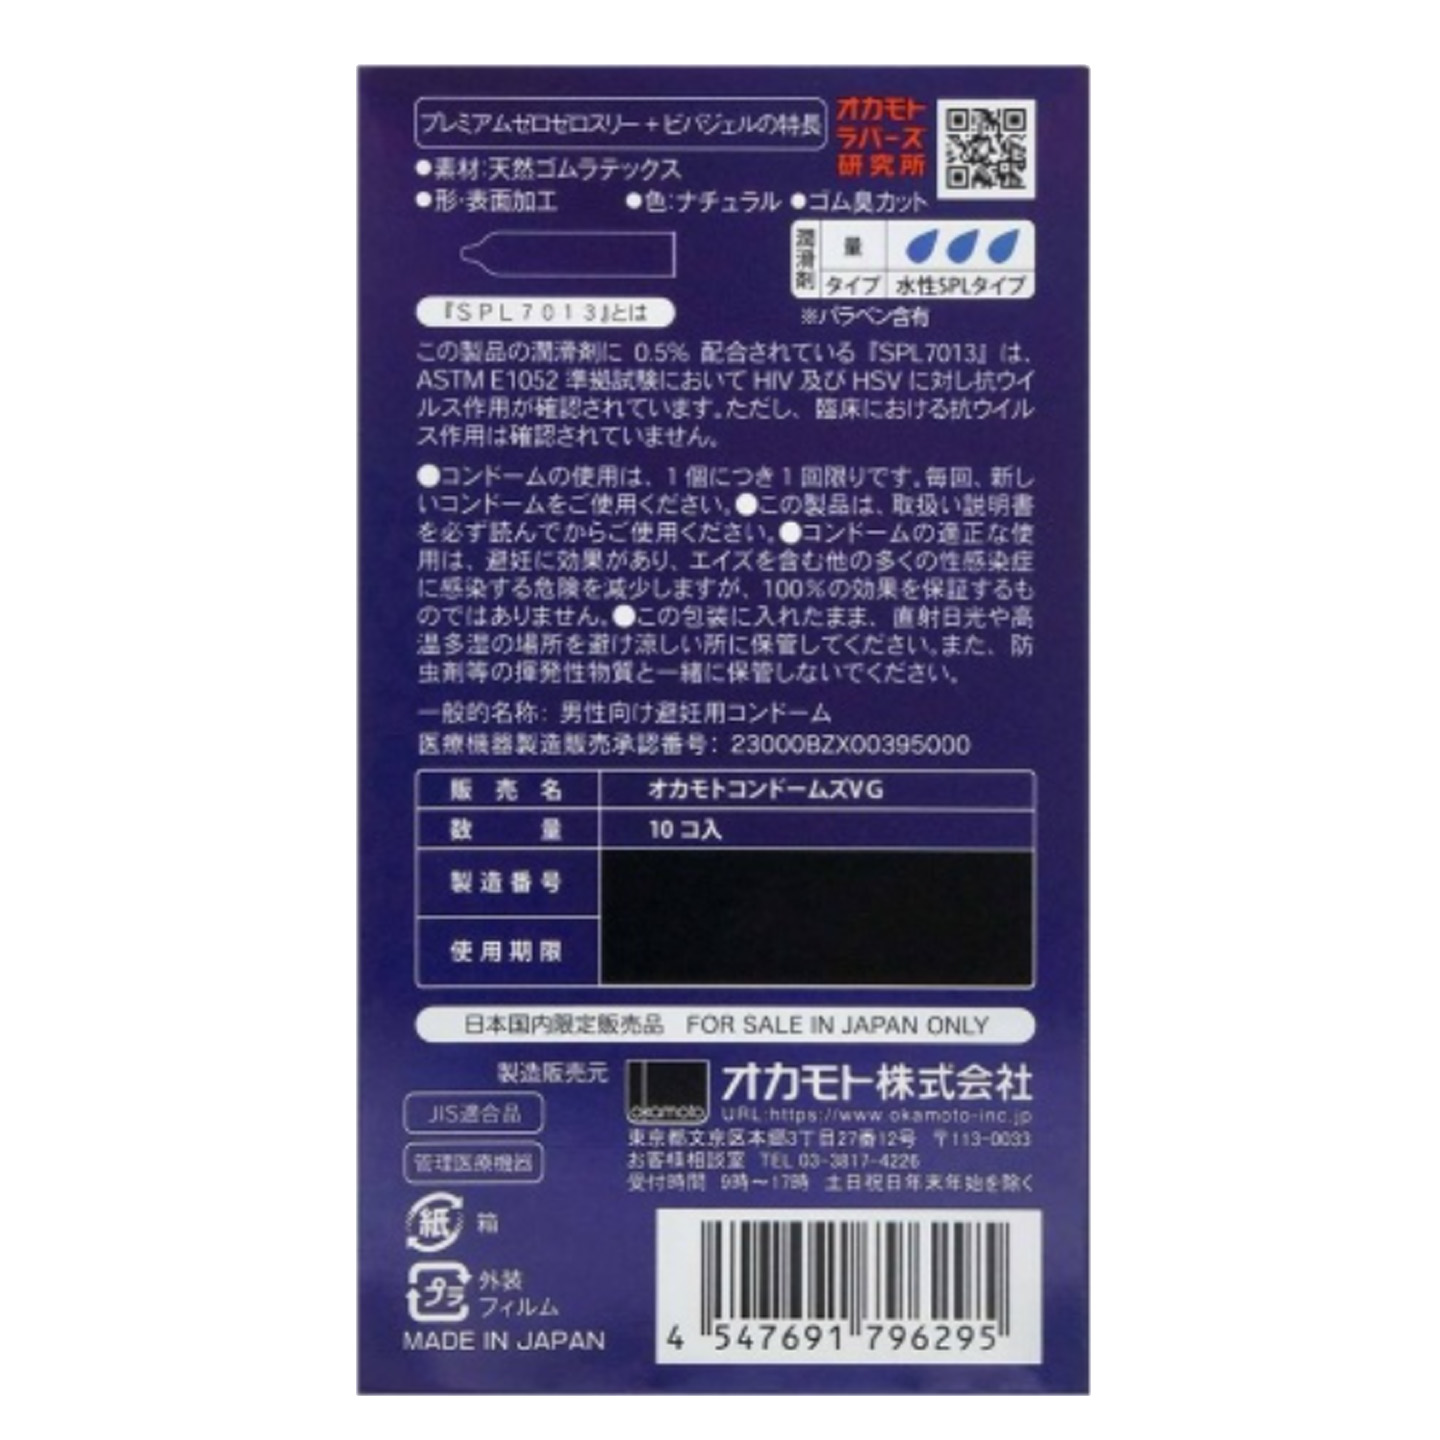 Okamoto 0.03 Vivagel Condom